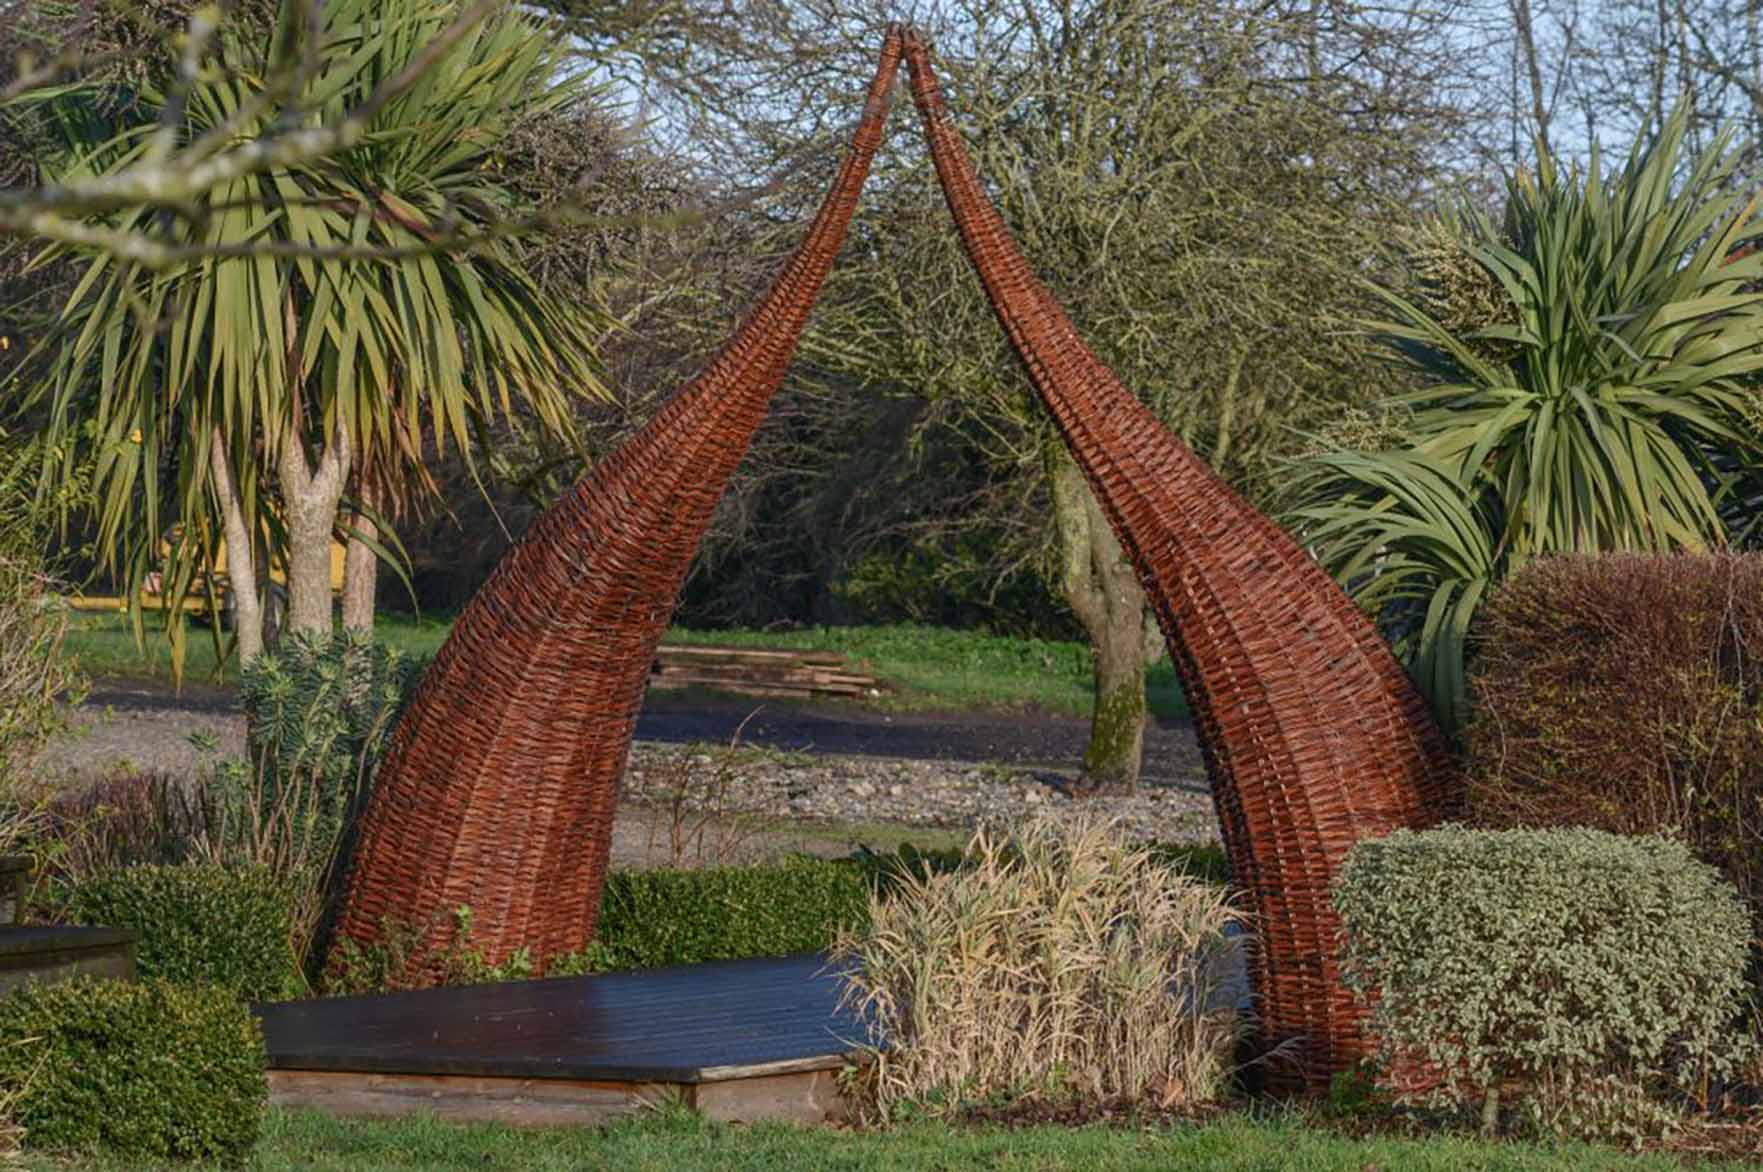 bespoke Willow sculpture in Norfolk garden